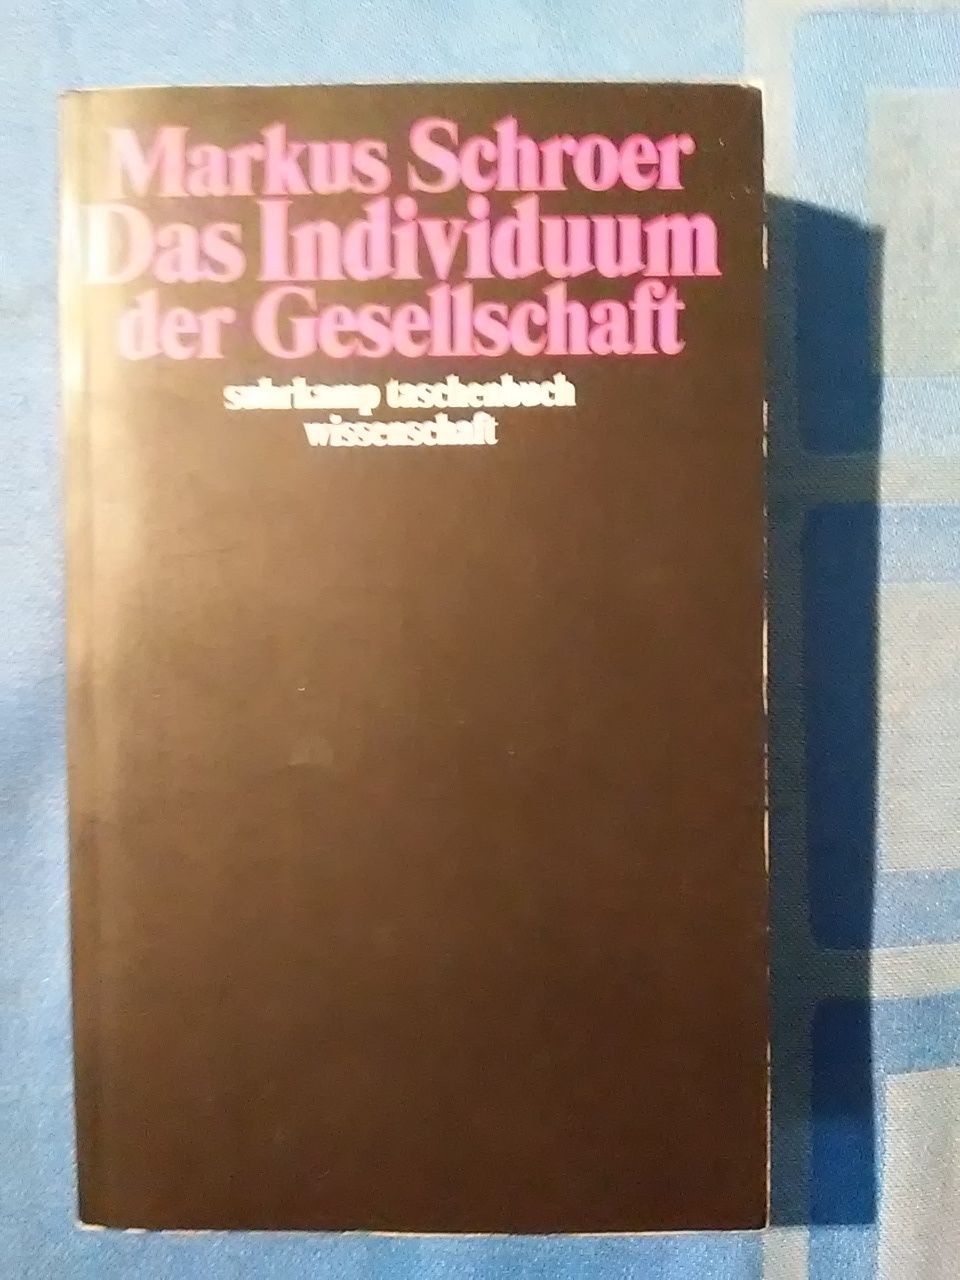 Das Individuum der Gesellschaft : synchrone und diachrone Theorieperspektiven. Suhrkamp-Taschenbuch Wissenschaft ; 1509 - Schroer, Markus.